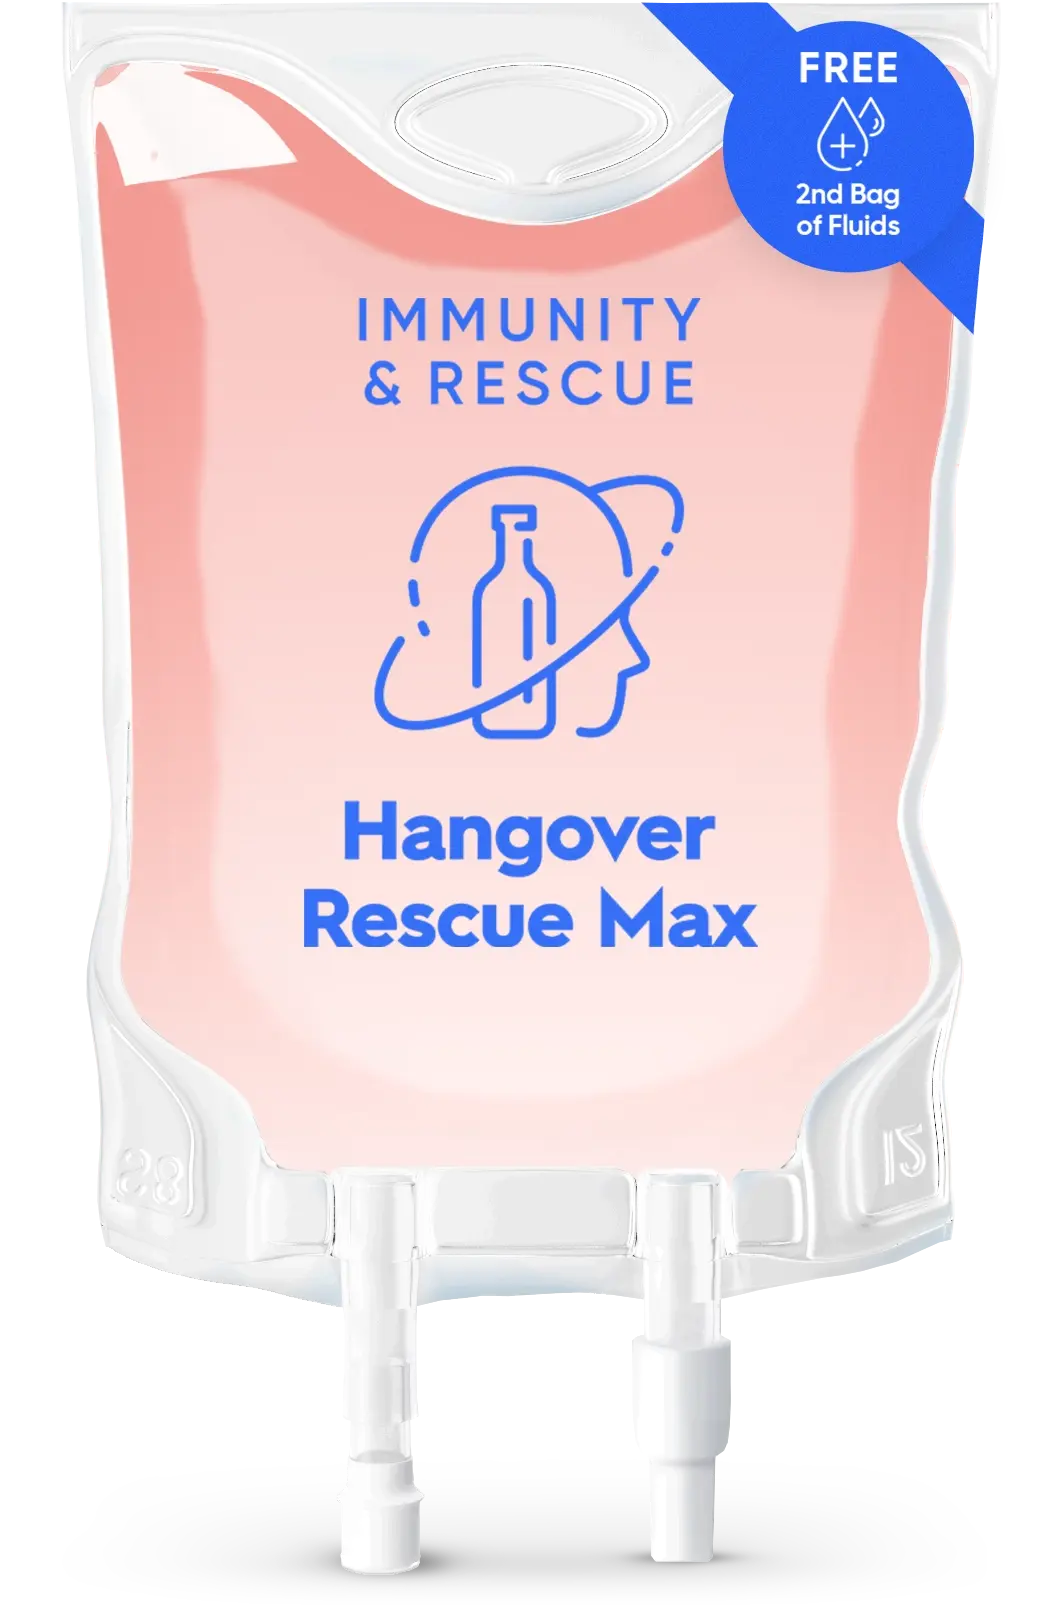 Hangover Rescue Max